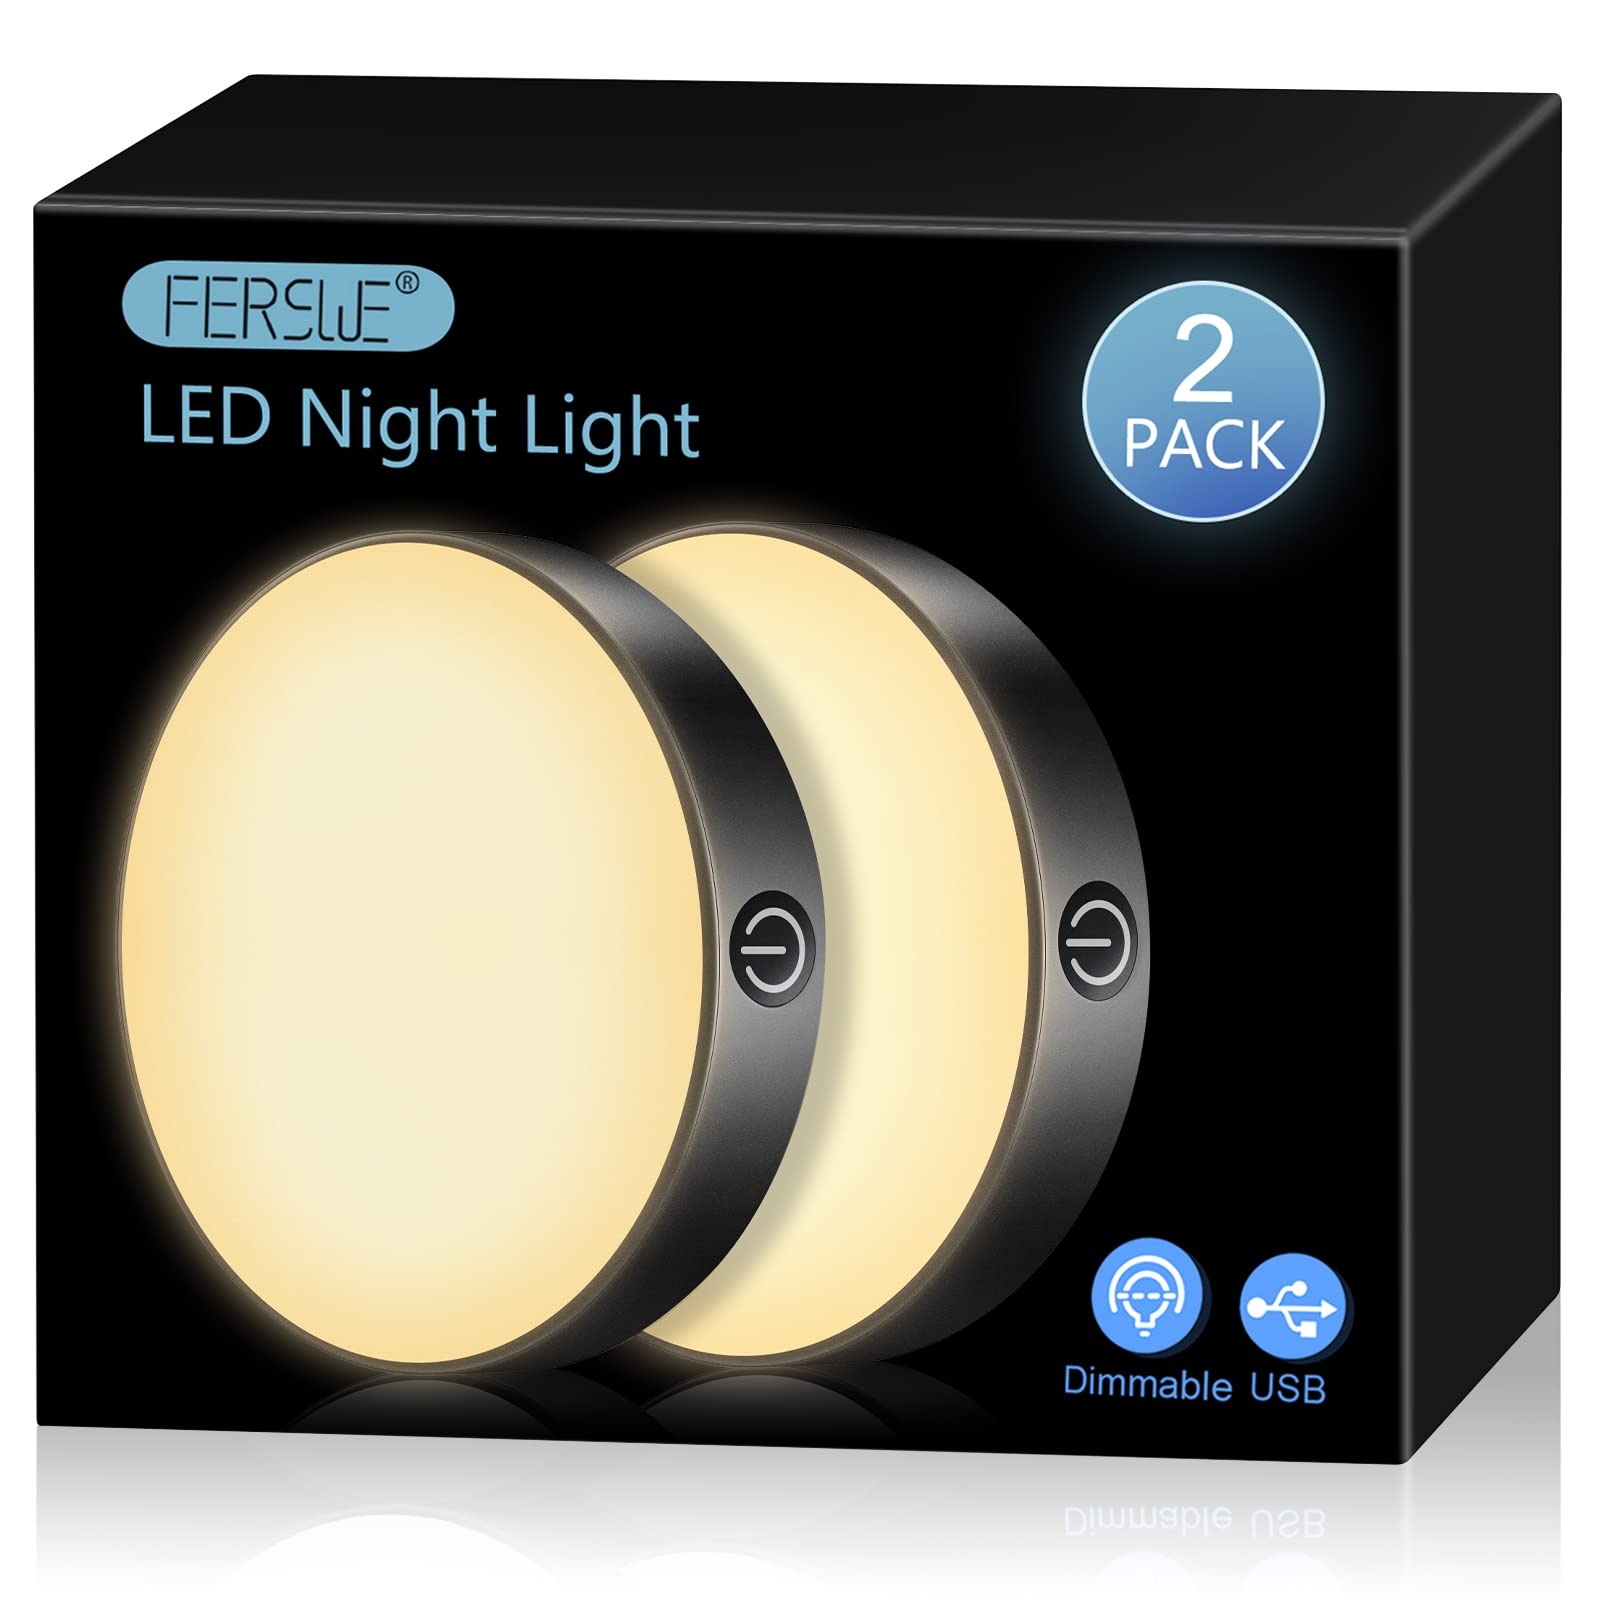 Ferswe Dimmbar LED Nachtlicht Warmweiß, USB Wiederaufladbare Led Batteriebetrieben mit 1000mAh Große Batterie, Led Touch Lampe für Schlafzimmer, Badezimmer, Küche, Wohnzimmer(2 Stück)